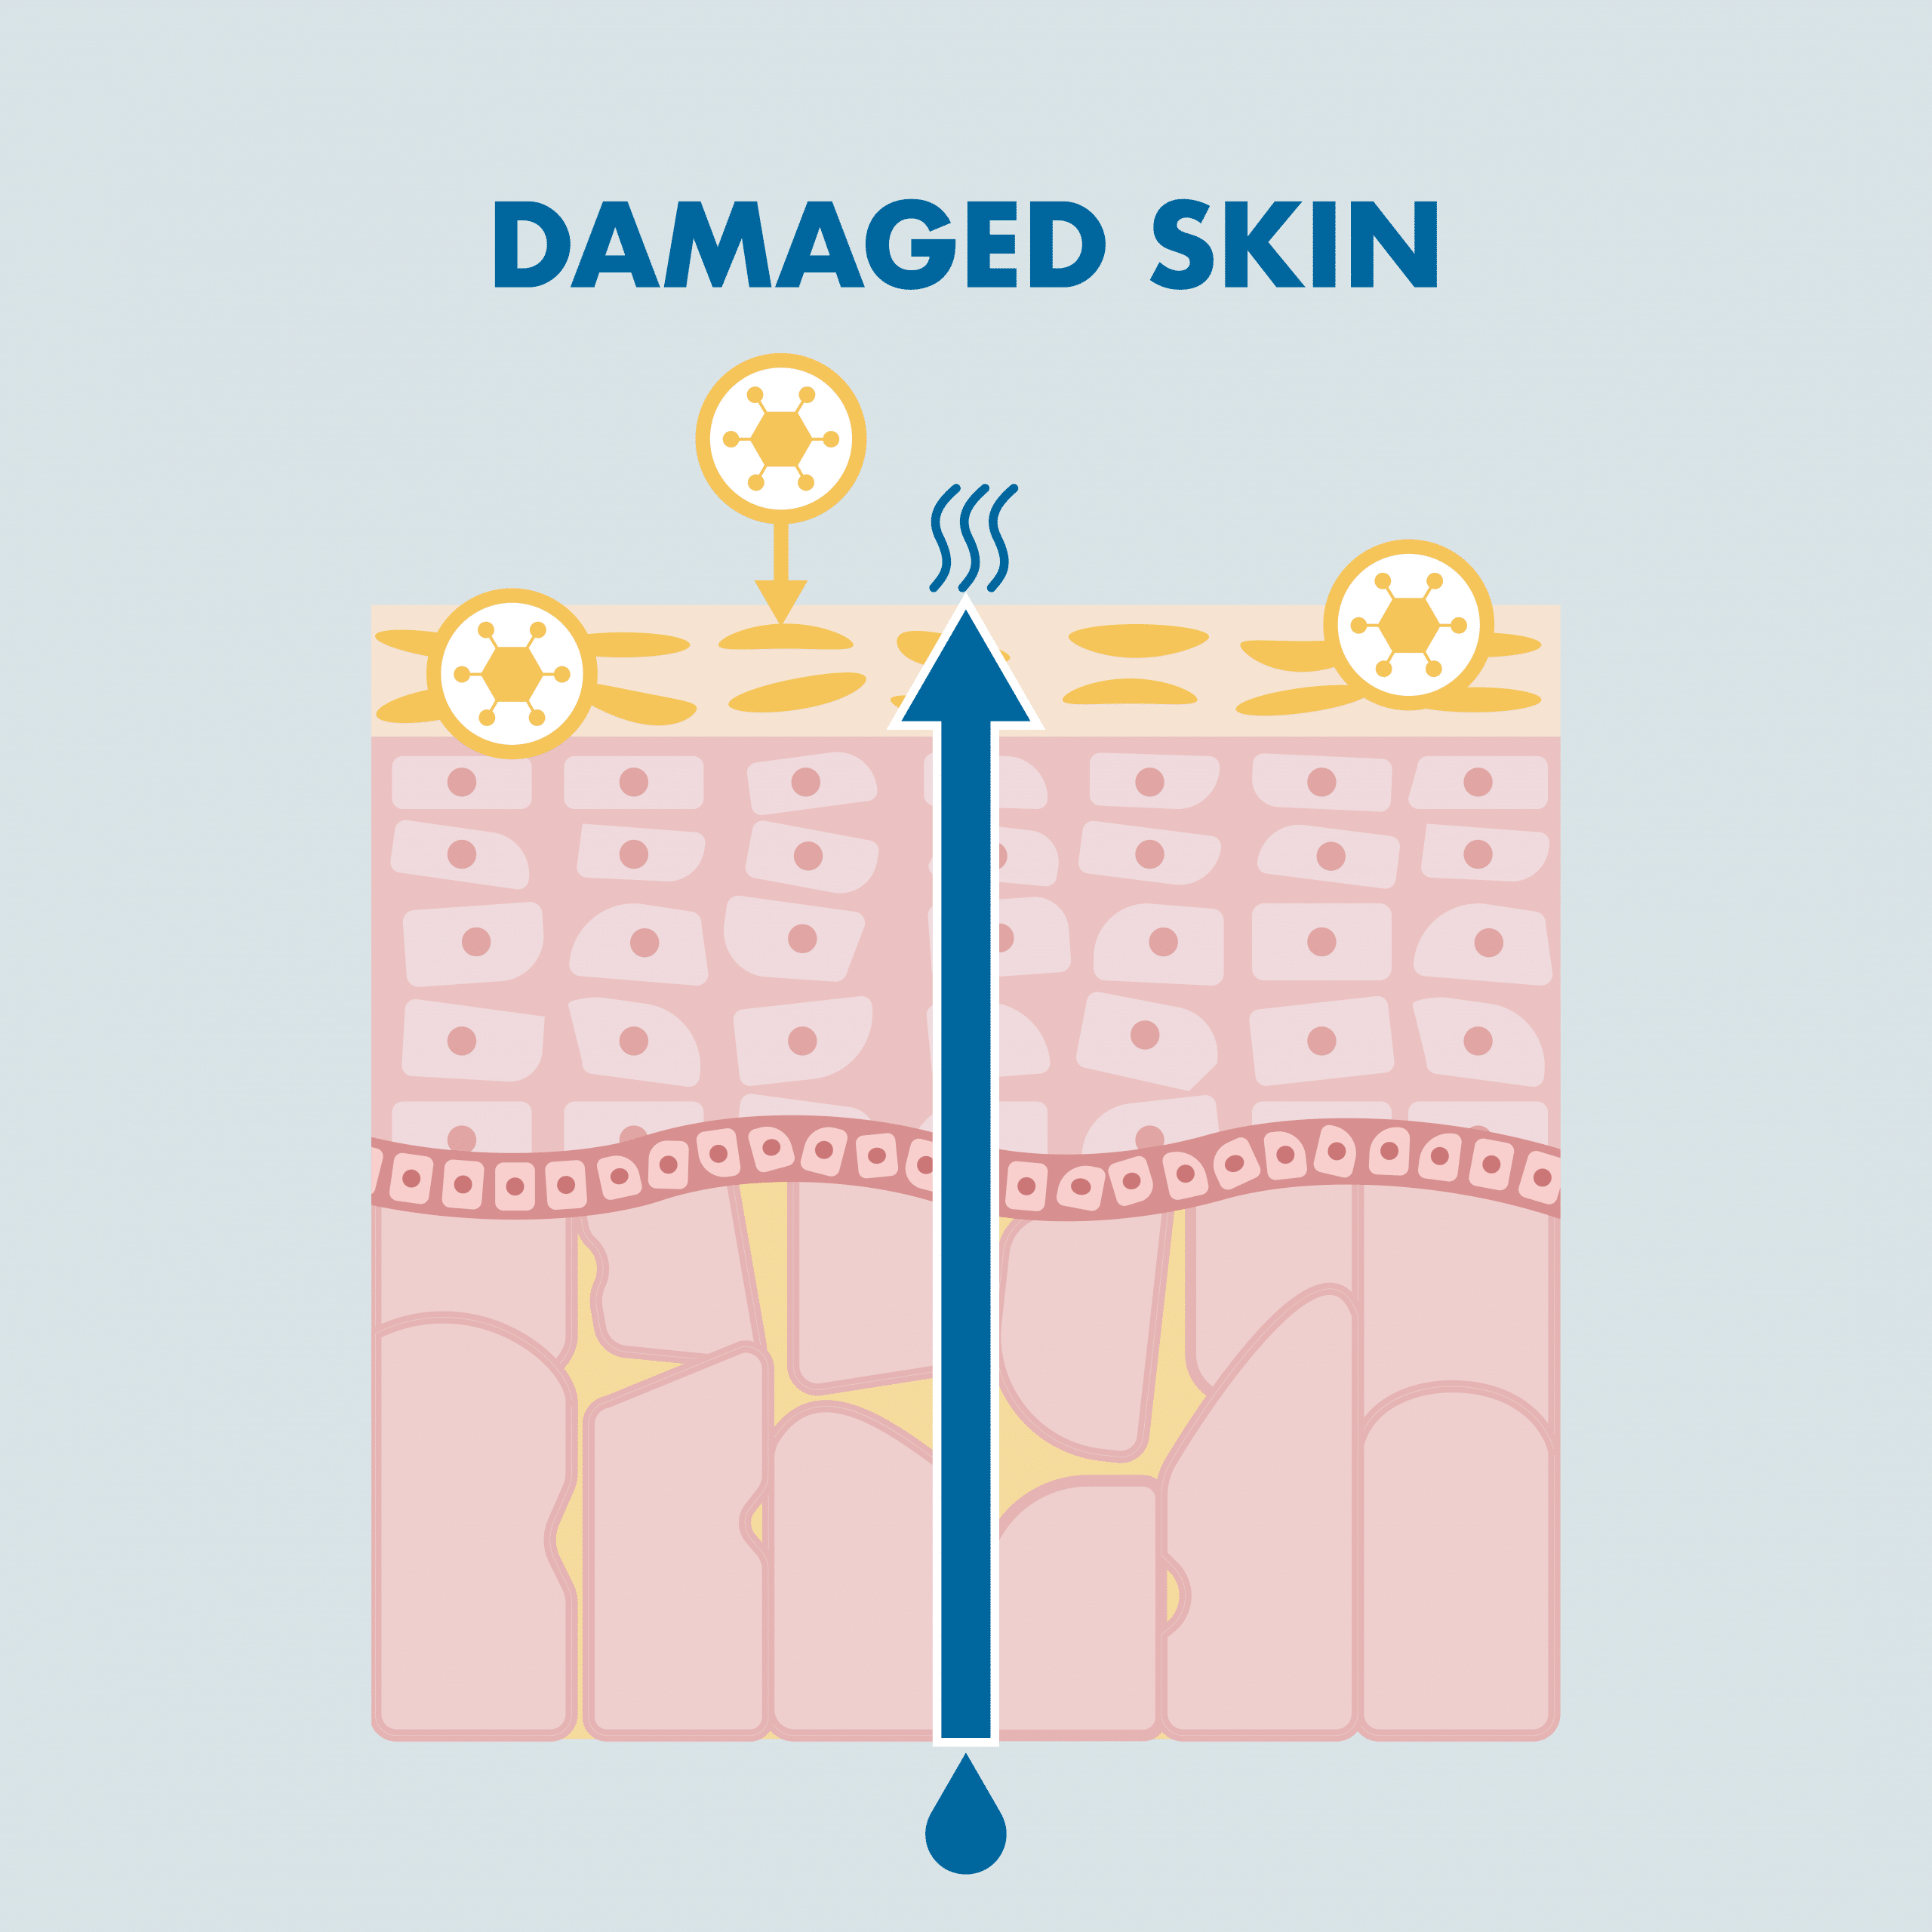 Damaged skin of the skin barrier